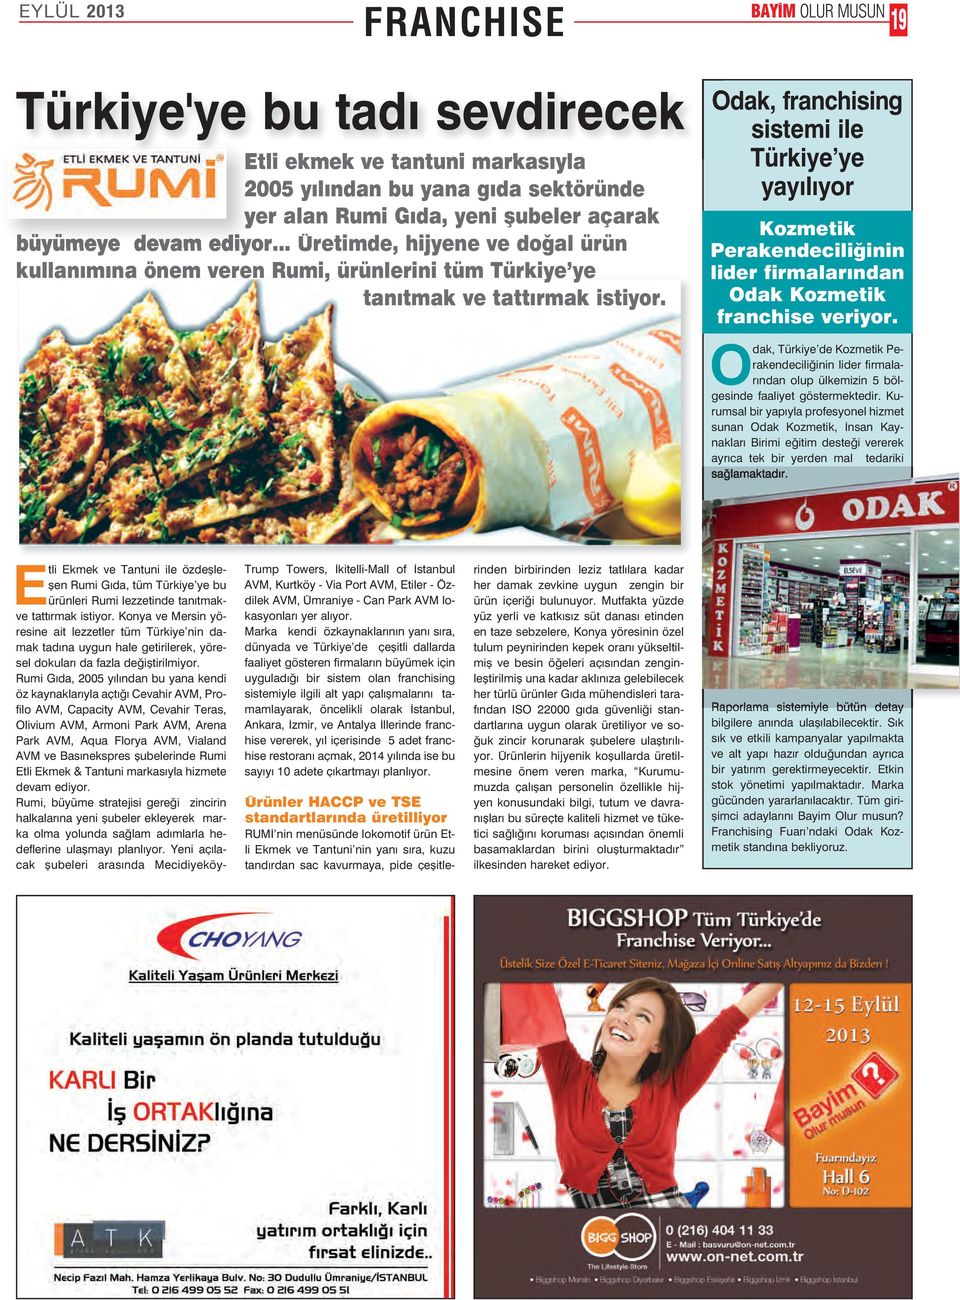 Odak, franchising sistemi ile Türkiye ye yayılıyor Kozmetik Perakendeciliğinin lider firmalarından Odak Kozmetik franchise veriyor.